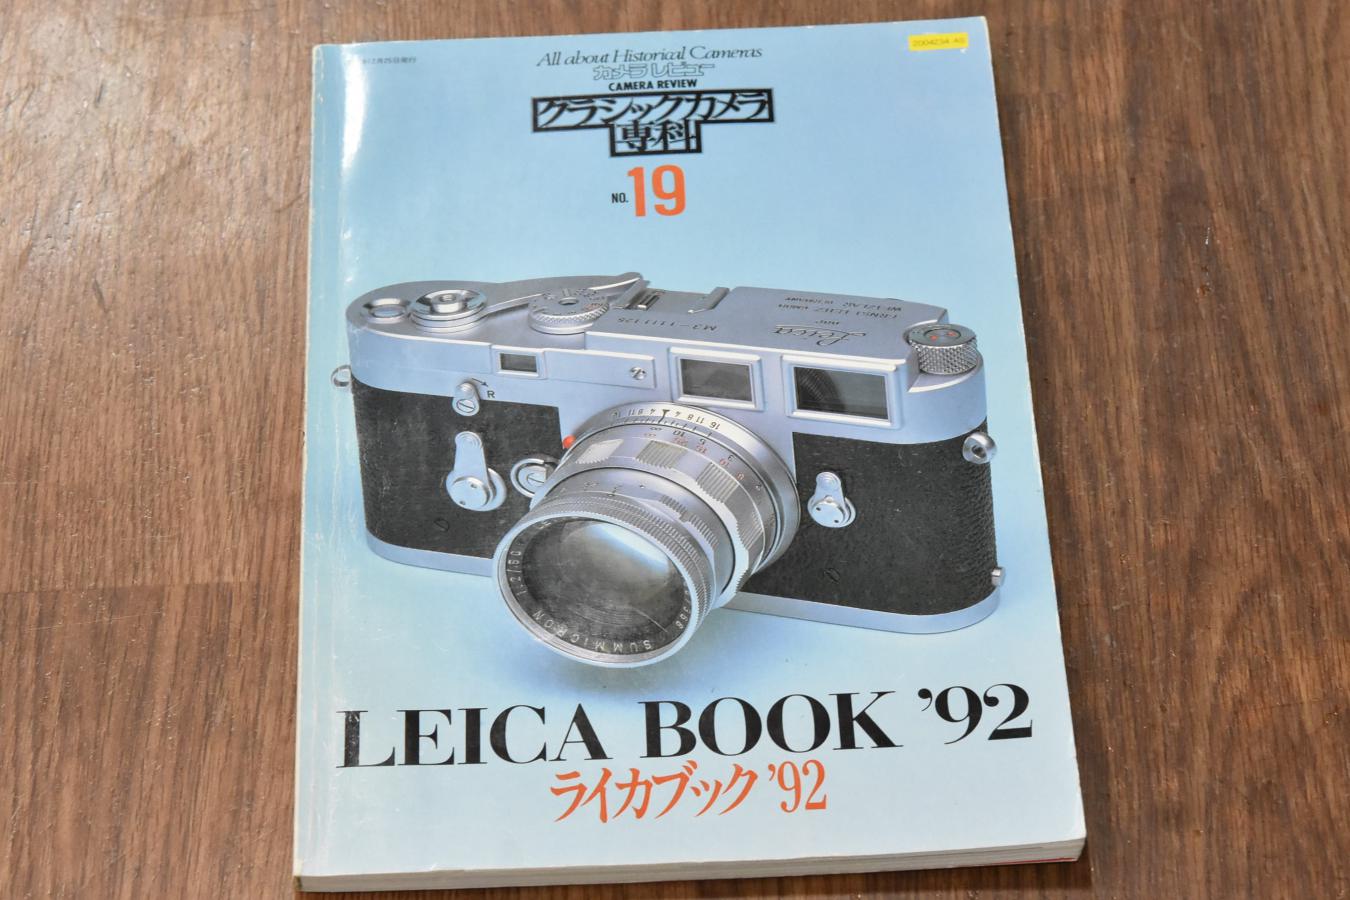 【絶版書籍】 朝日ソノラマ カメラレビュー クラシックカメラ専科No19 【LEICA BOOK 92】